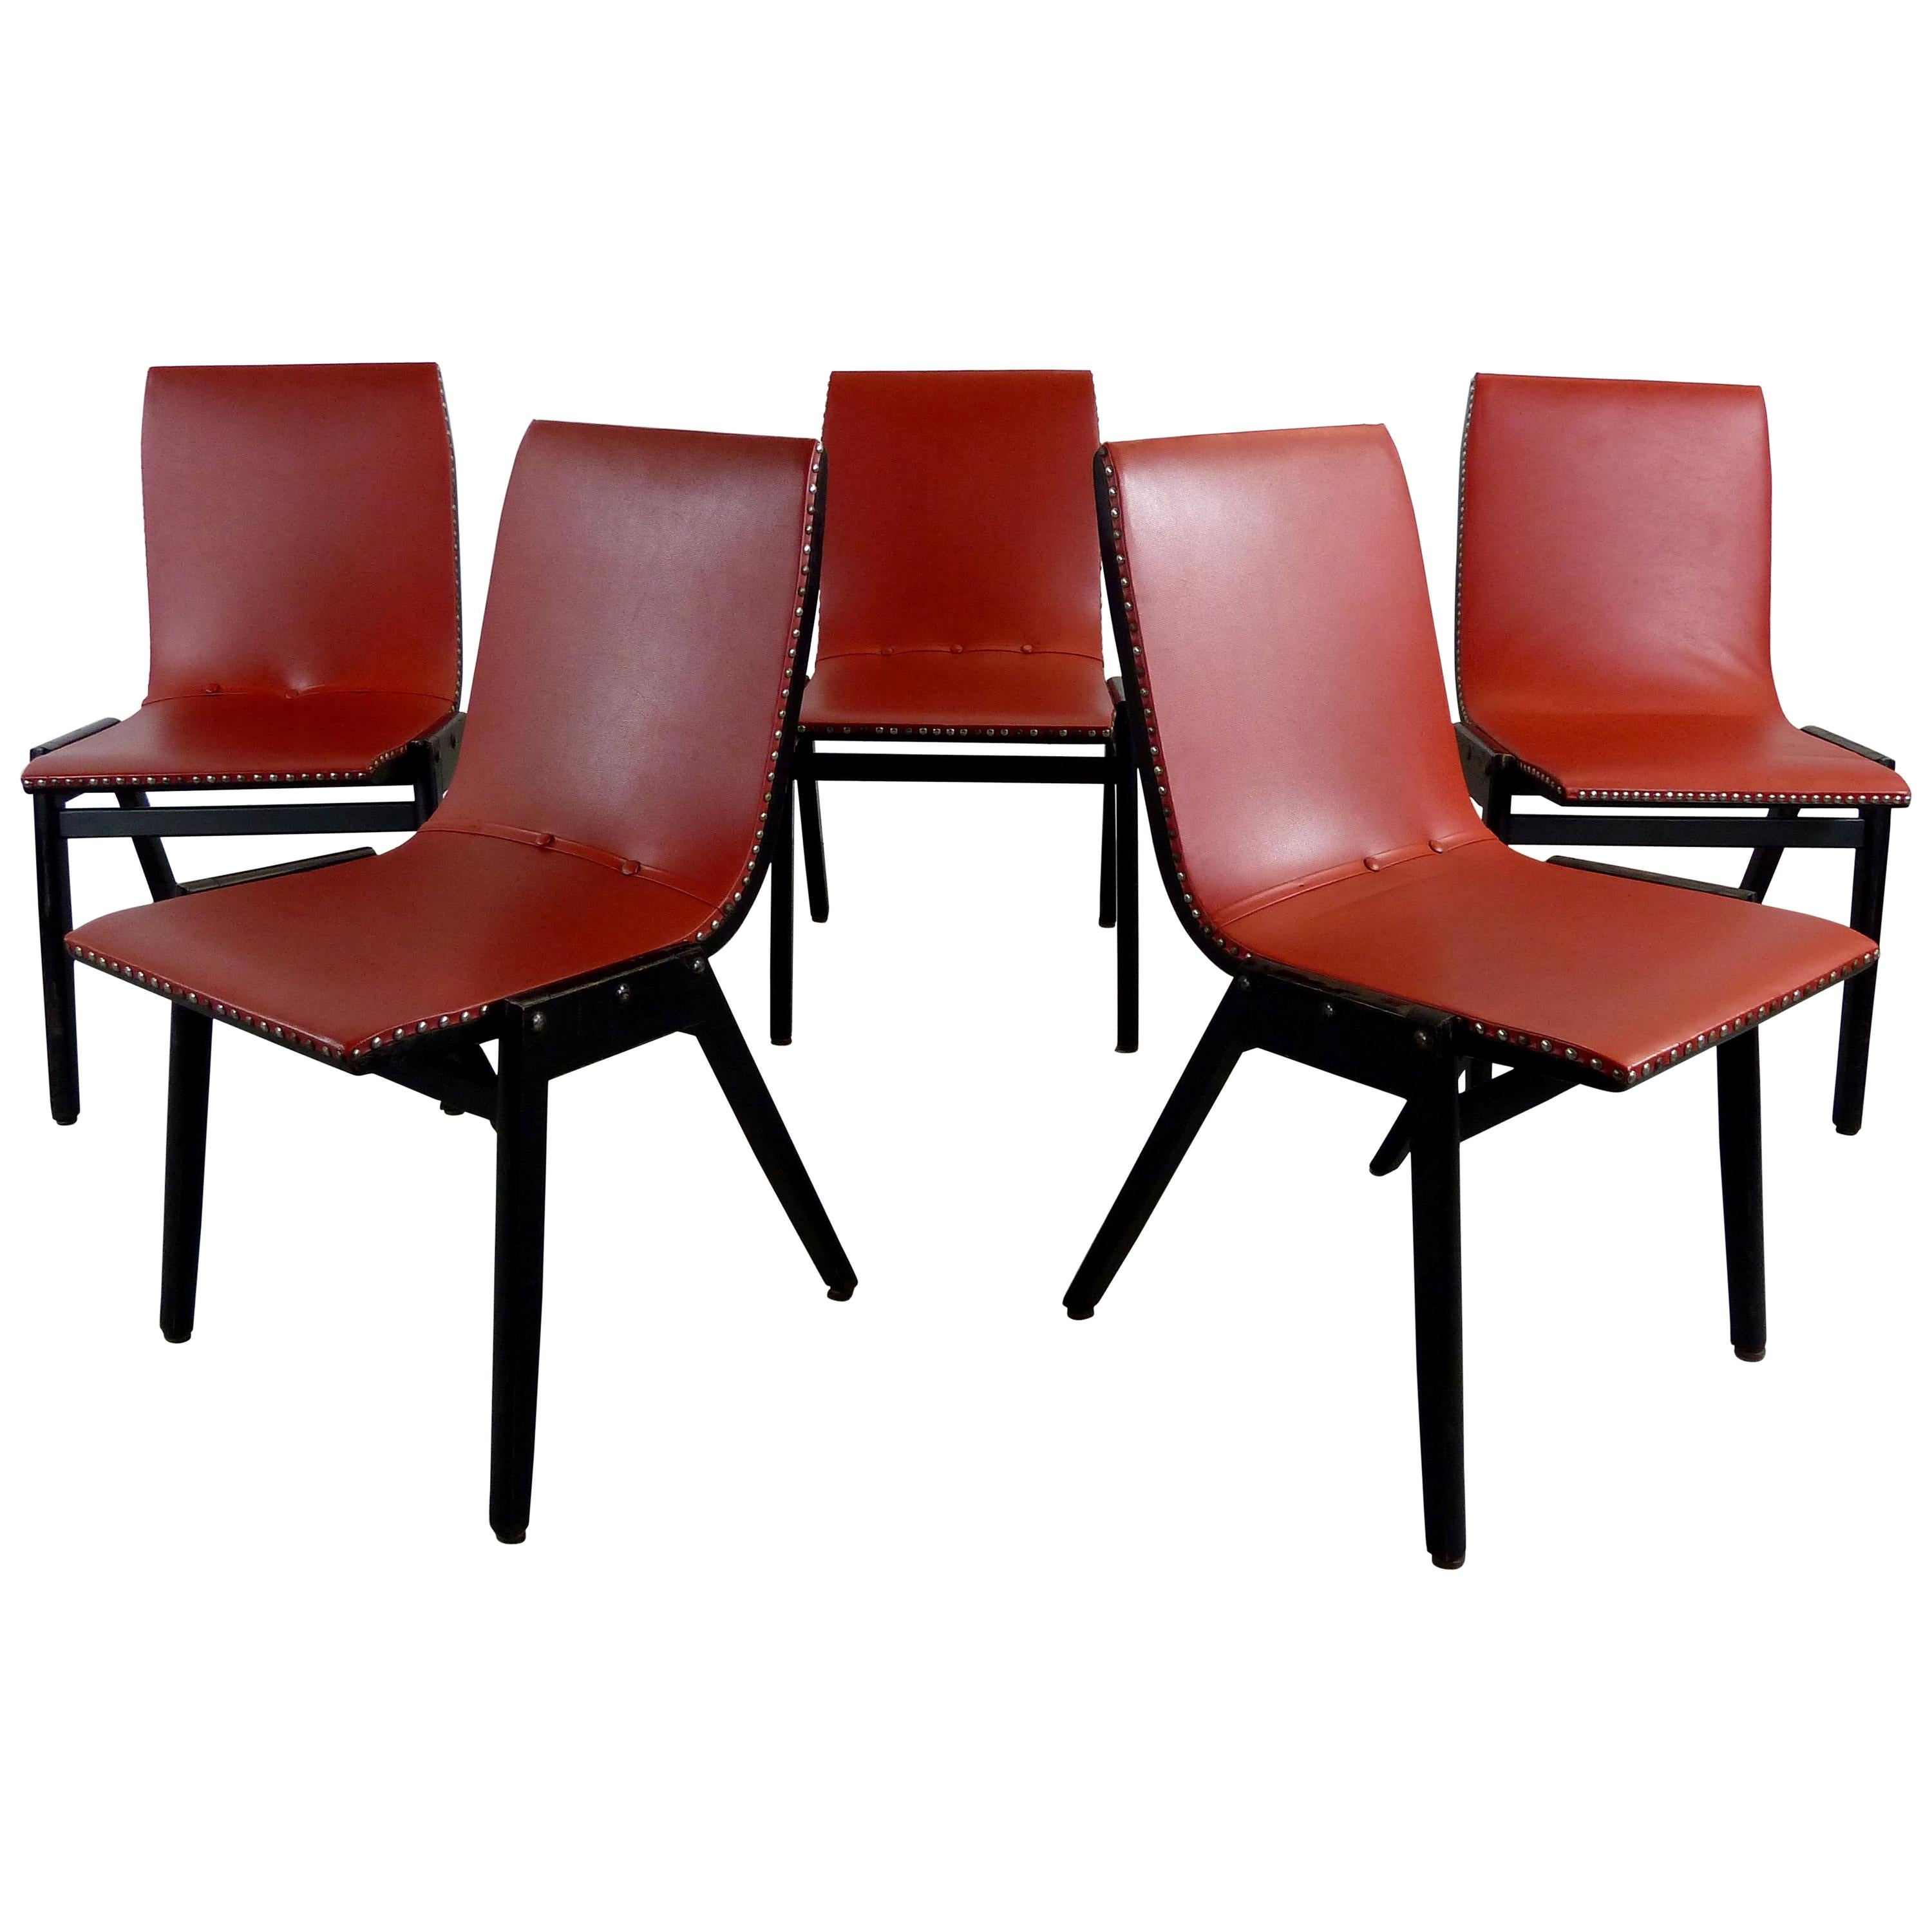 Ensemble de 5 chaises de salle à manger du designer autrichien Roland Rainer